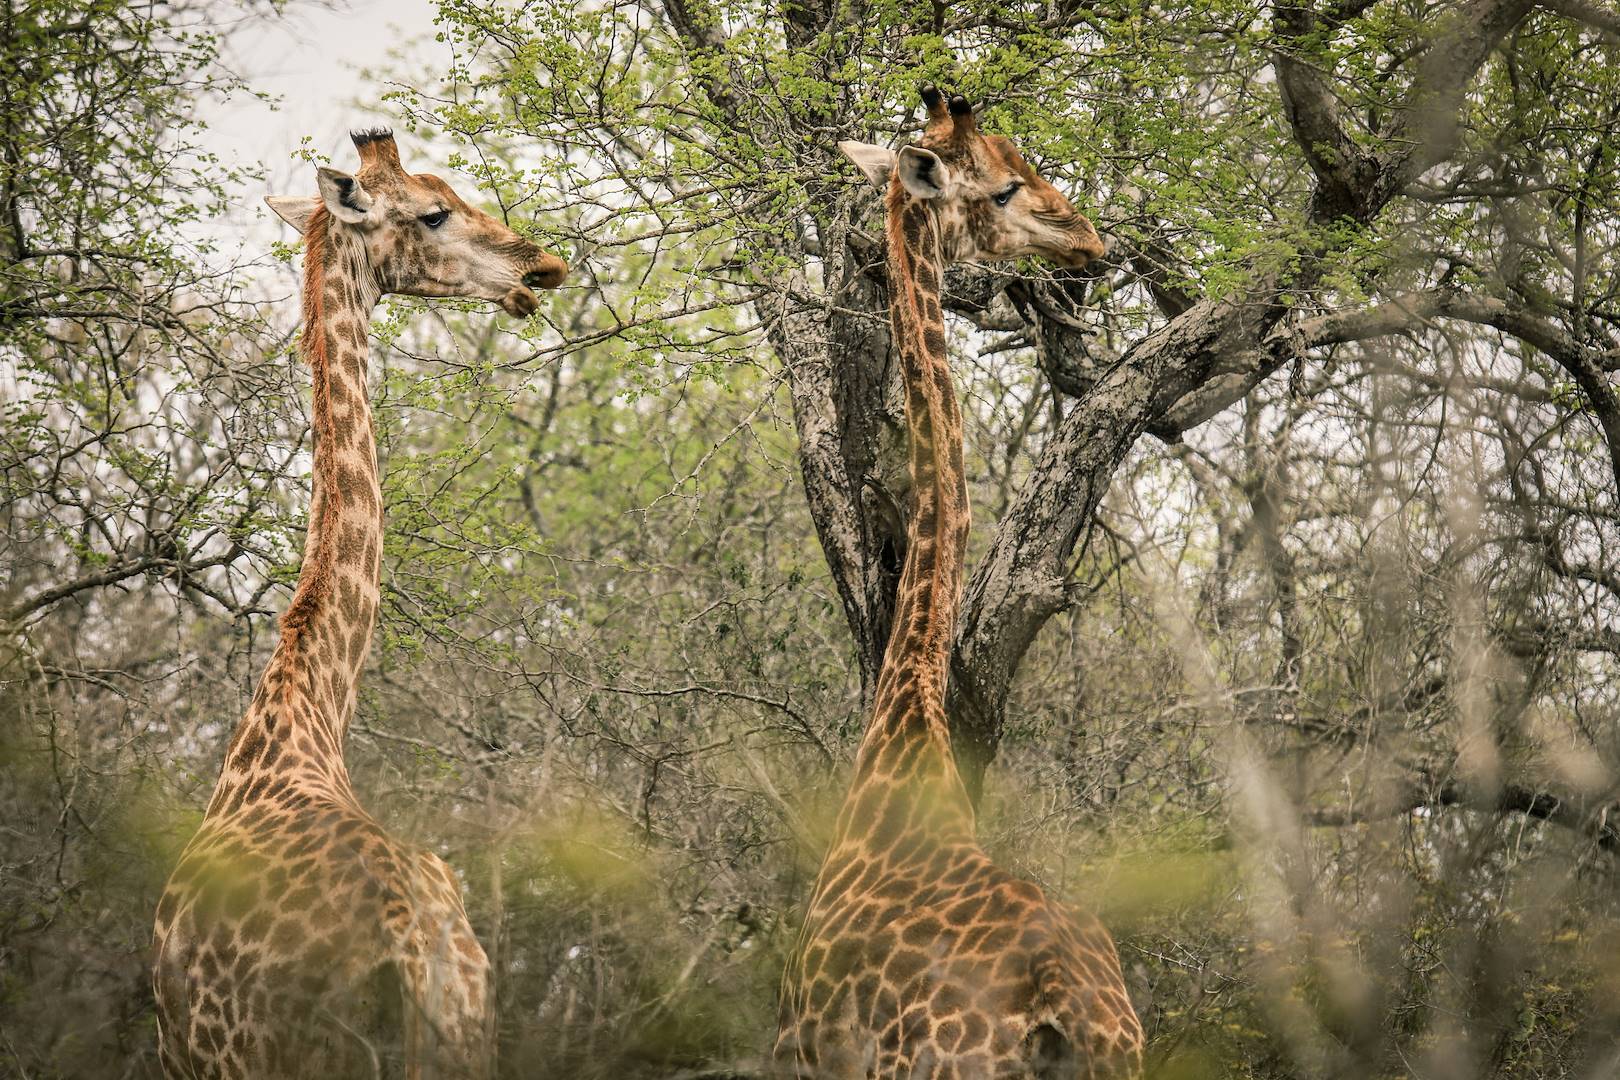 Safari animalier dans le Parc National de Moremi : rencontre avec deux girafes - Moremi Game Reserve - Botswana